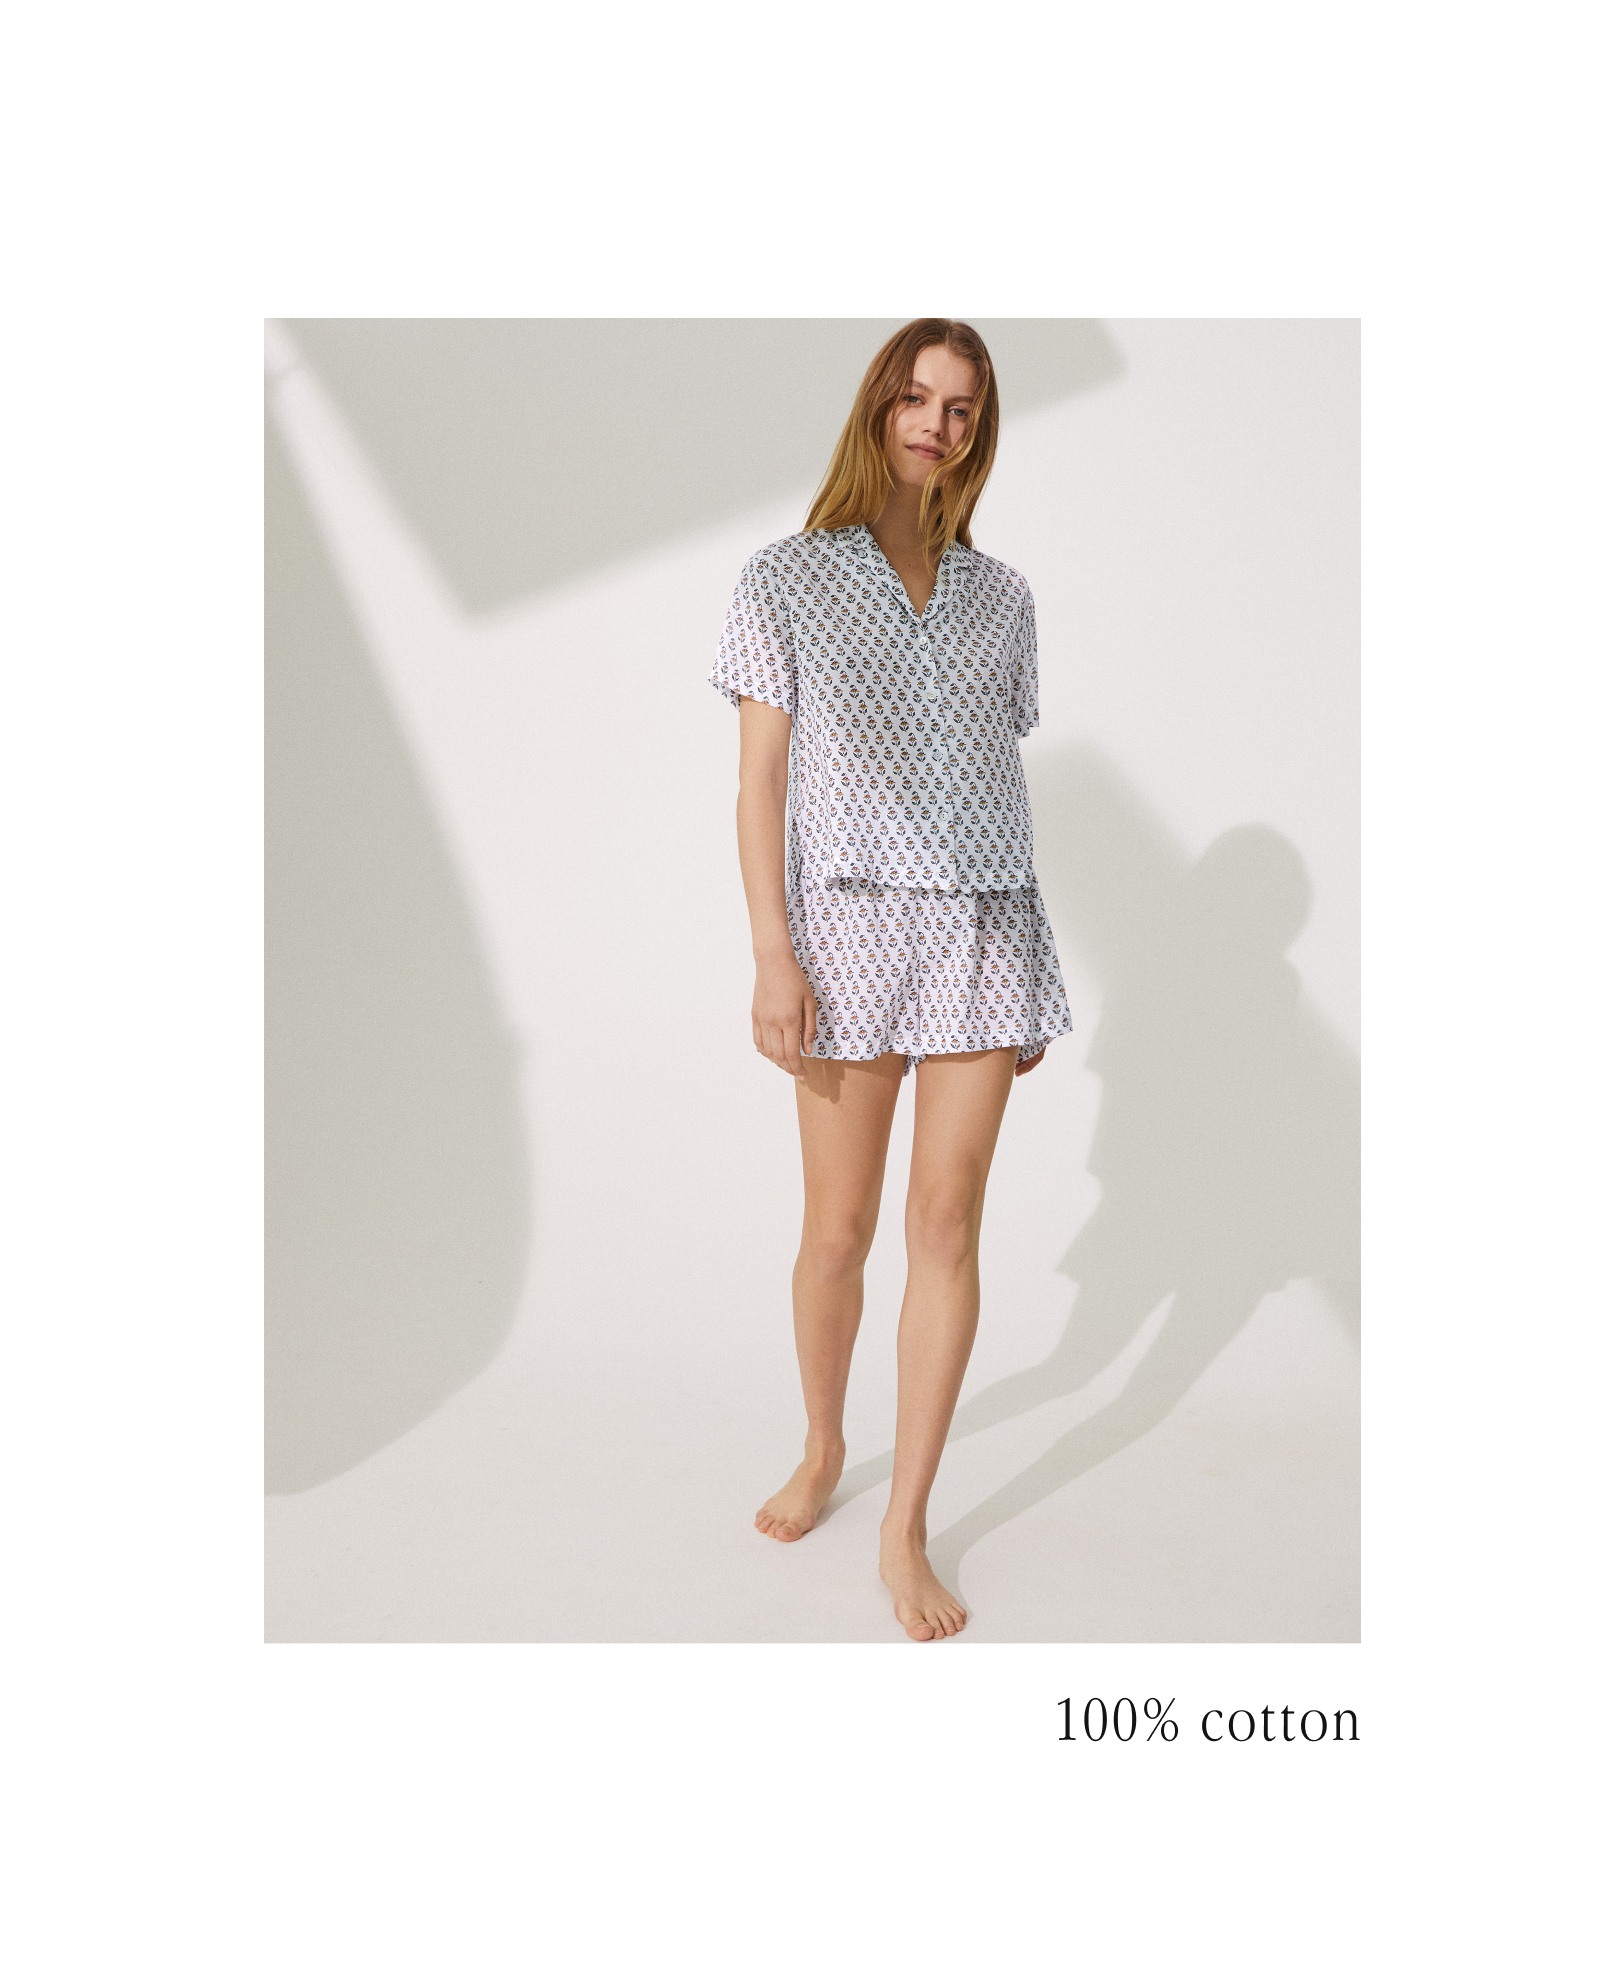 Completo pigiama stile camicia corta 100% cotone